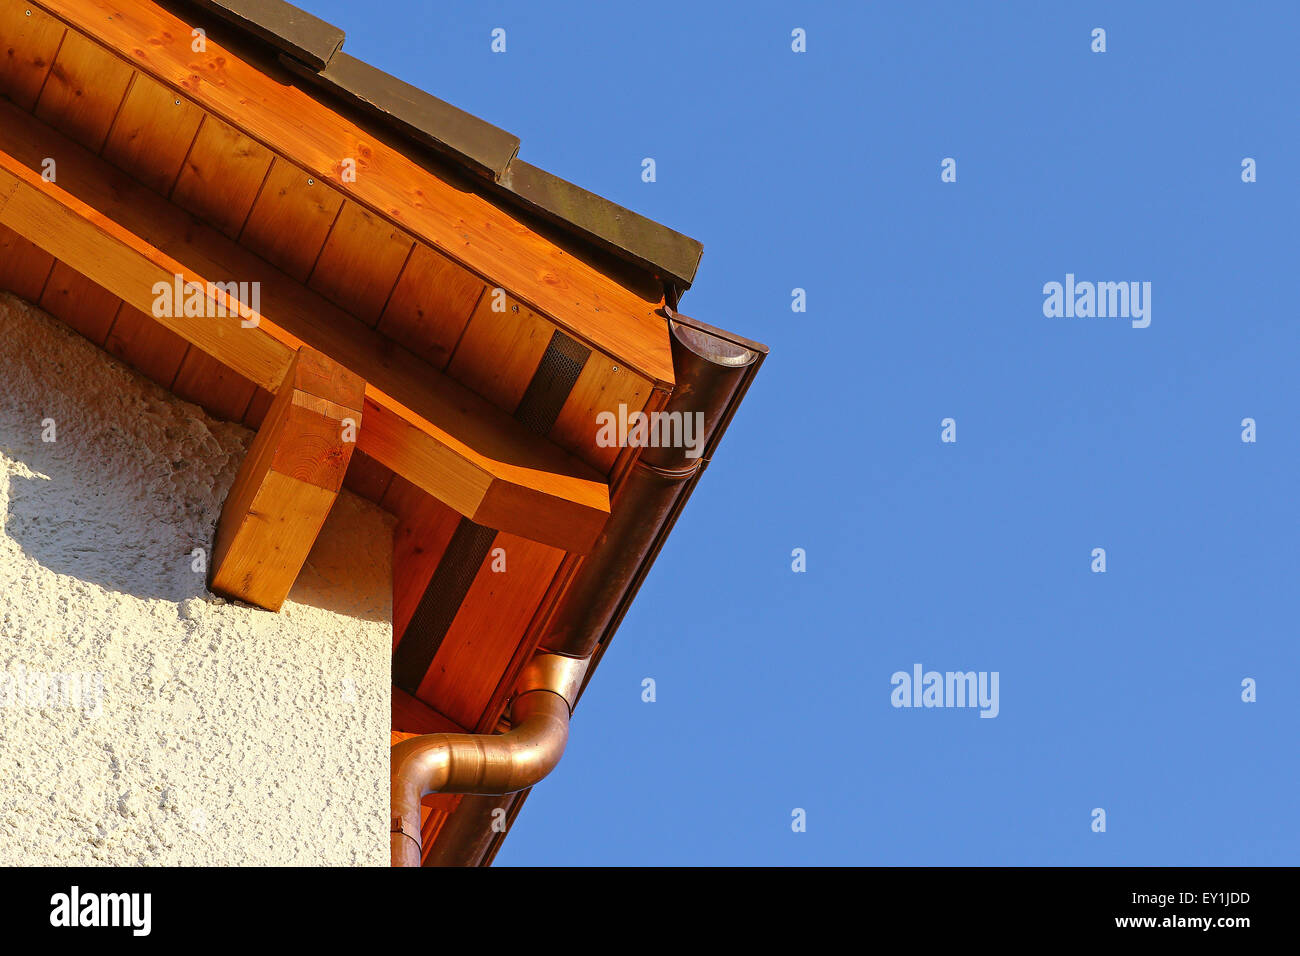 Nouveaux détails sur le toit en cuivre avec des carreaux de céramique et d'un caniveau d'eau Banque D'Images